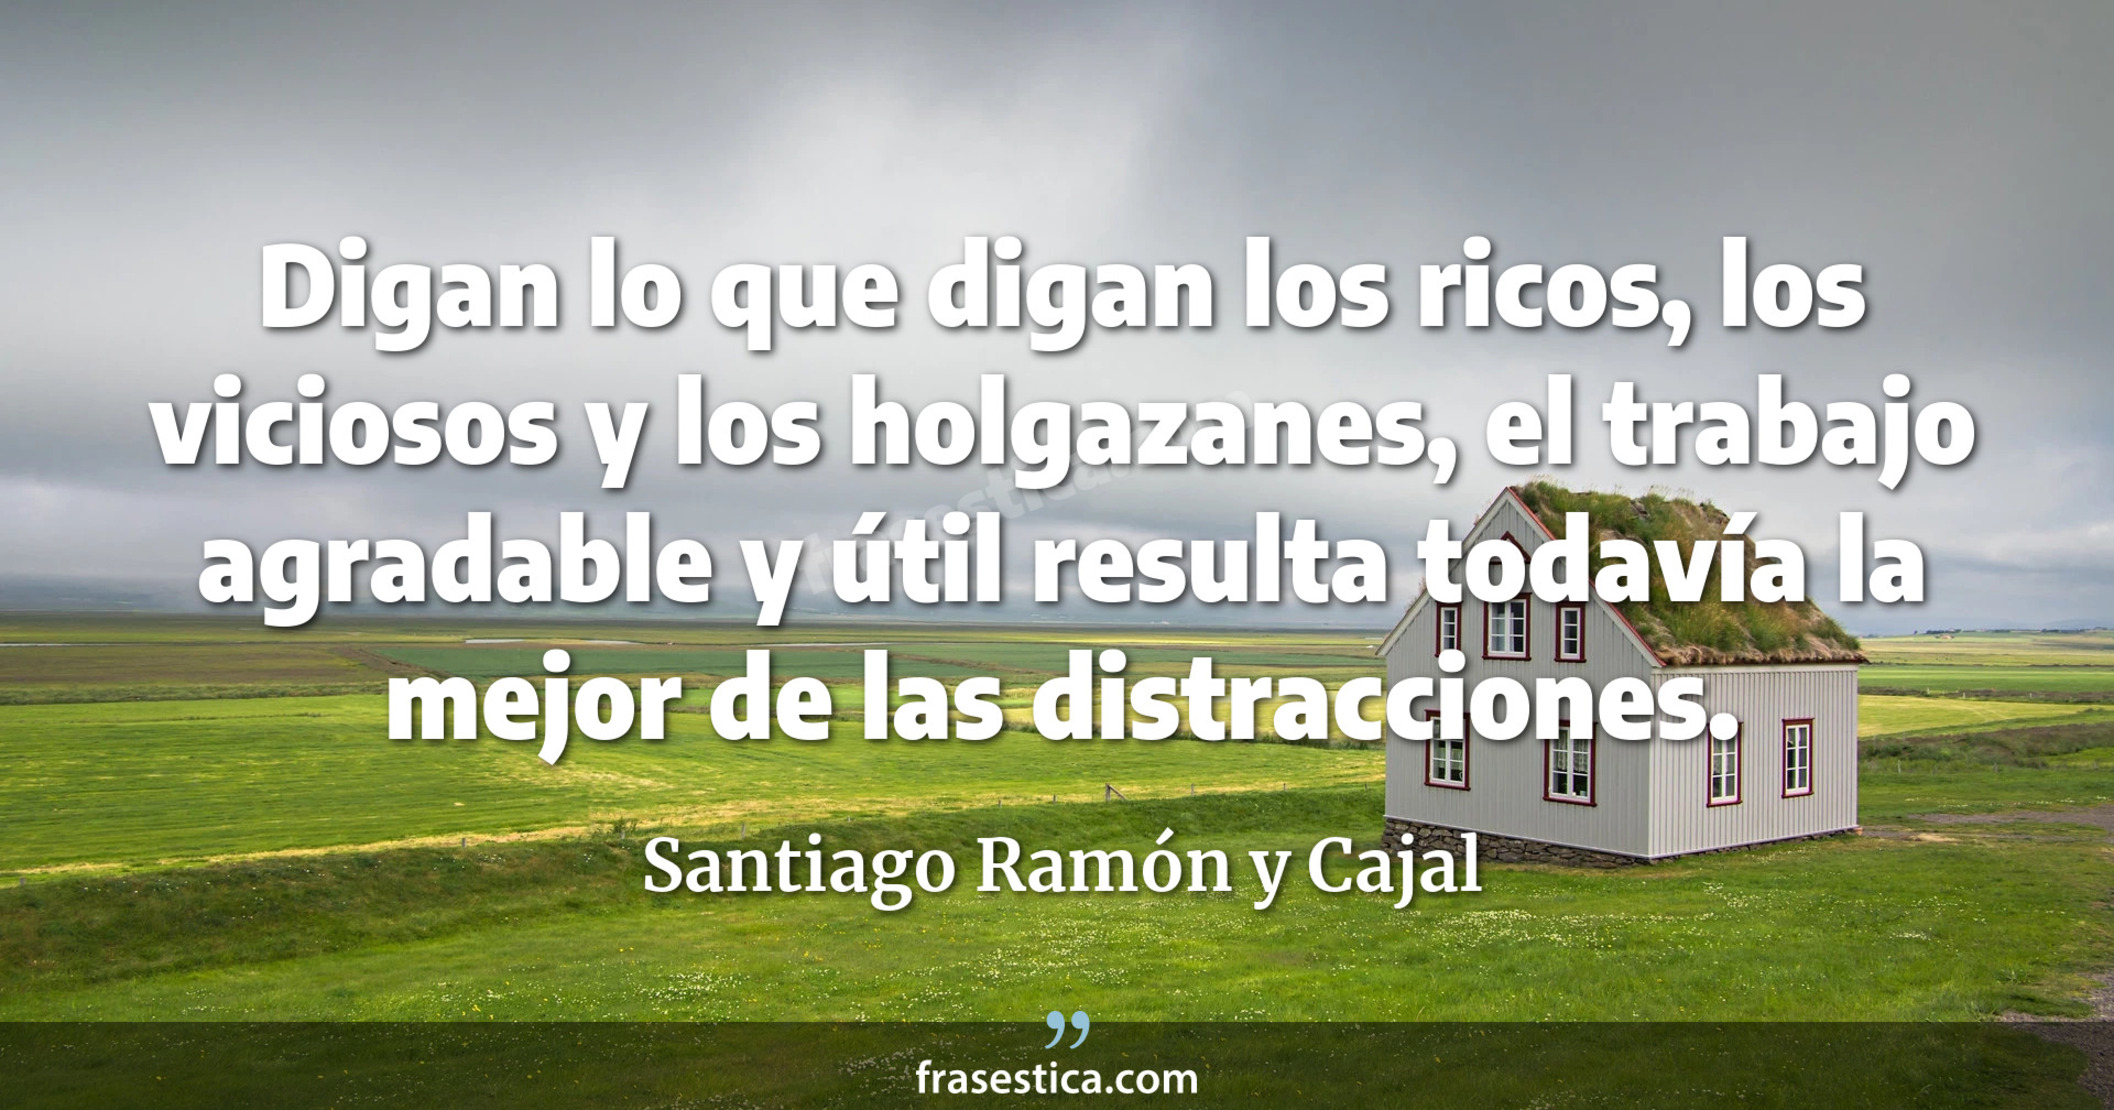 Digan lo que digan los ricos, los viciosos y los holgazanes, el trabajo agradable y útil resulta todavía la mejor de las distracciones. - Santiago Ramón y Cajal